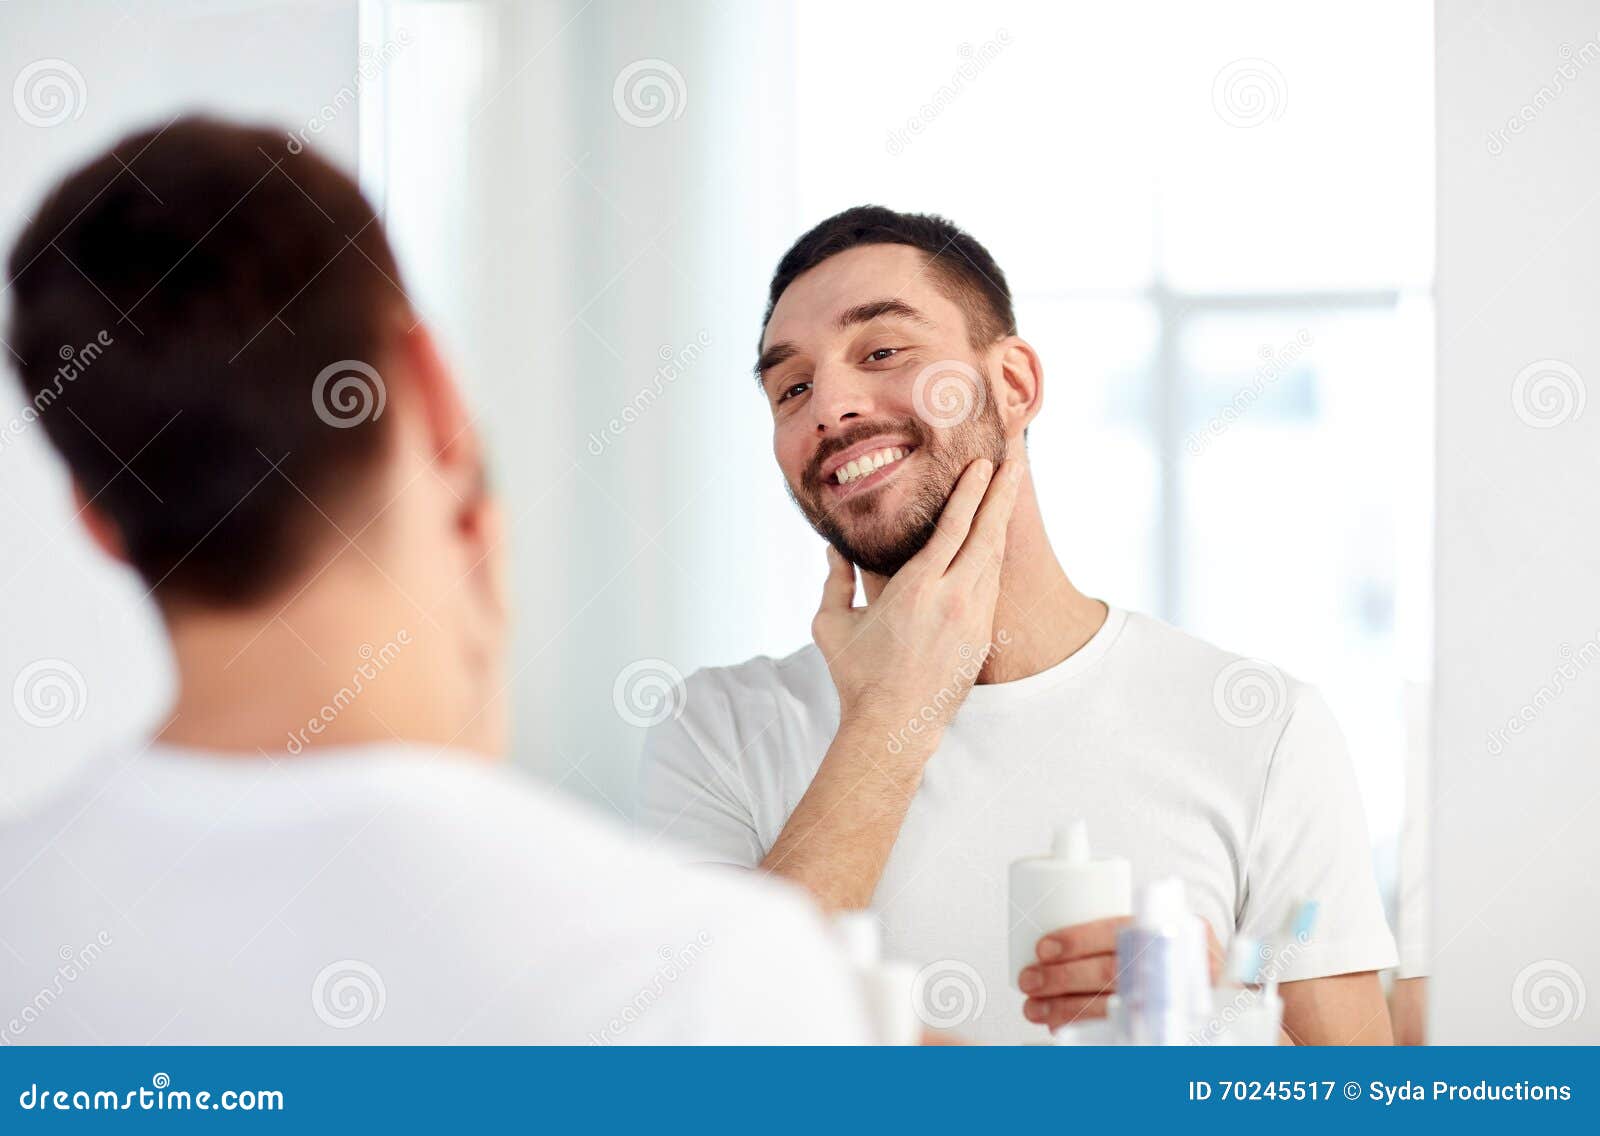 happy man applying aftershave at bathroom mirror